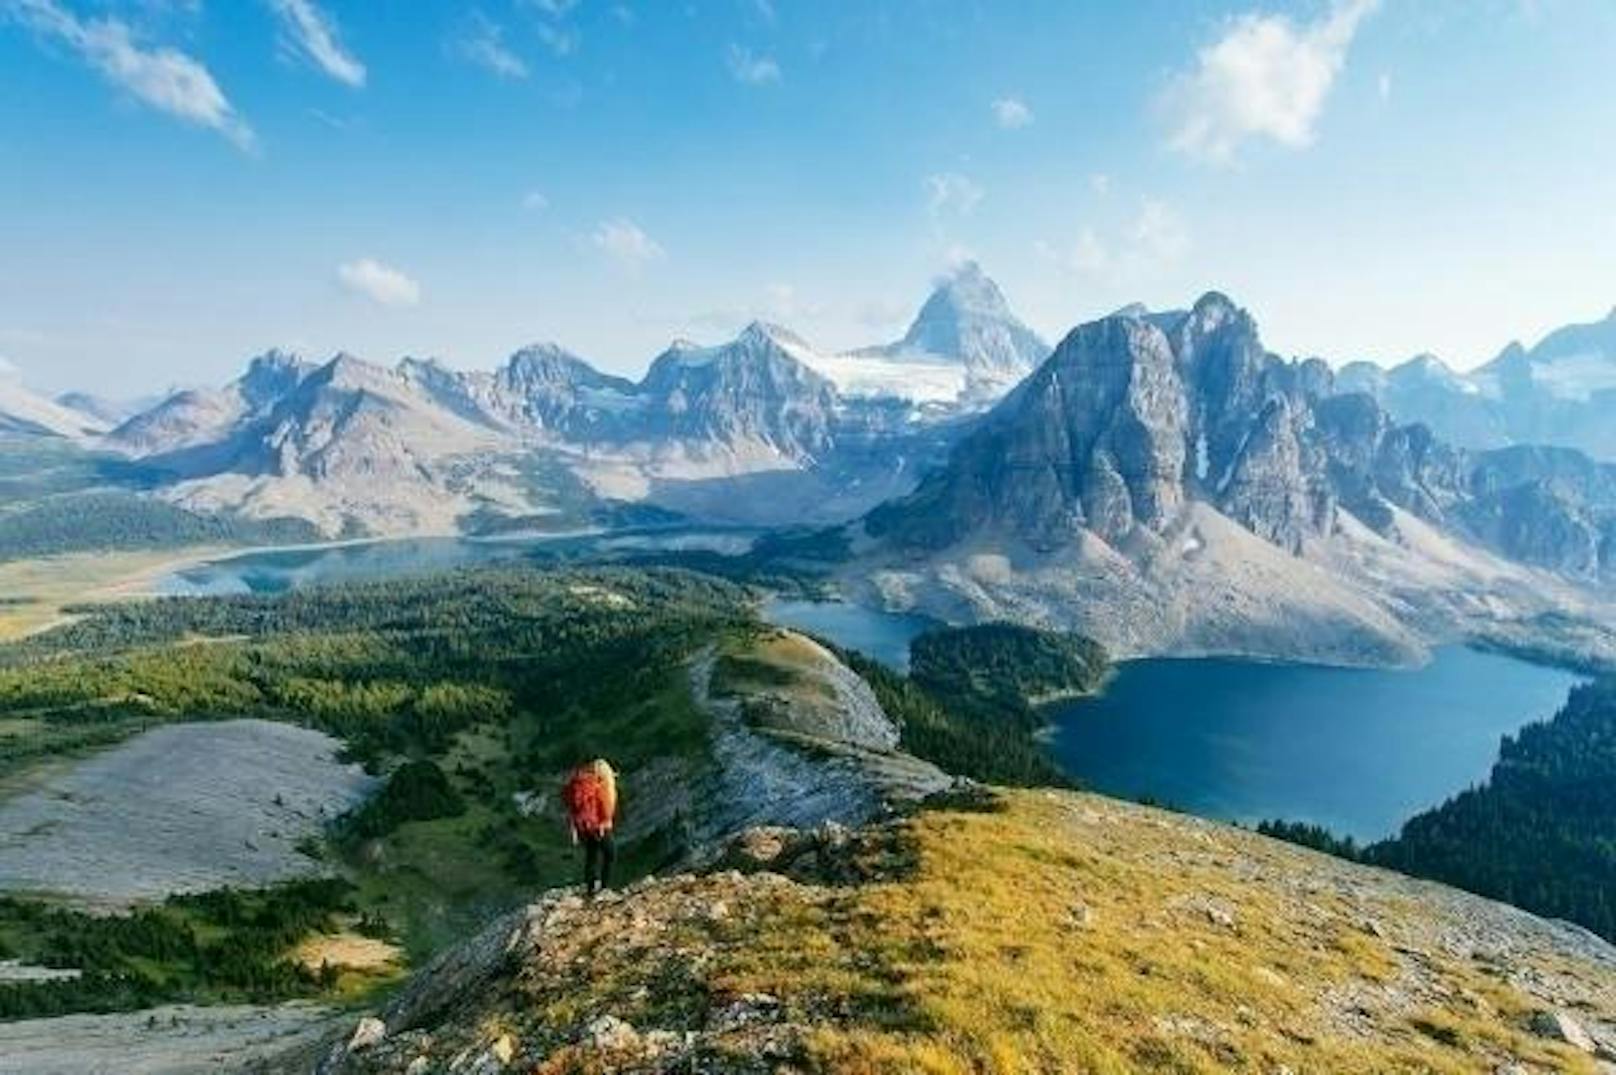 <b>Great Divide Trail, Kanada:</b> Obwohl er unter anderem durch die bekannten Jasper- und Banff-Nationalparks führt, ist dieser Fernwanderweg laut den Autoren von "Wanderlust" bis heute ein Geheimtipp. Da er nicht durchgehend ausgeschildert ist, müssen Wanderer zwingend mit Kompass und Karte umgehen können. Außerdem muss man sich vor Bären in Acht nehmen. Distanz: 1200 Kilometer, Dauer: 40 bis 50 Tage, Anforderung: mittel bis schwer.